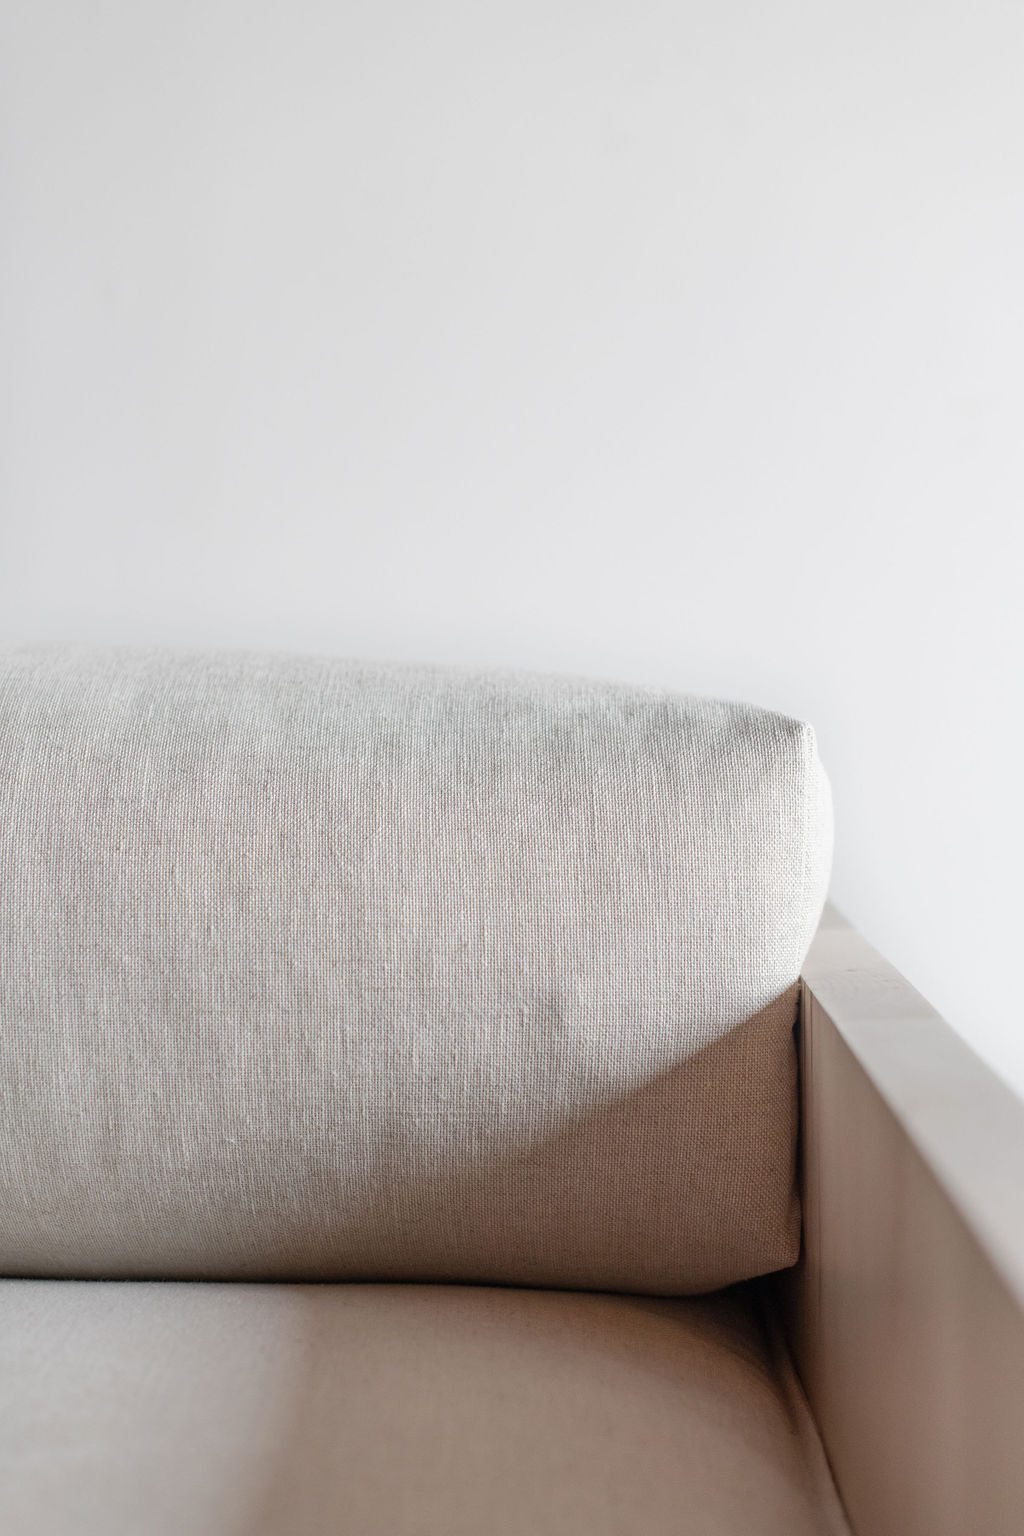 Carter sofa- Pillow close up 